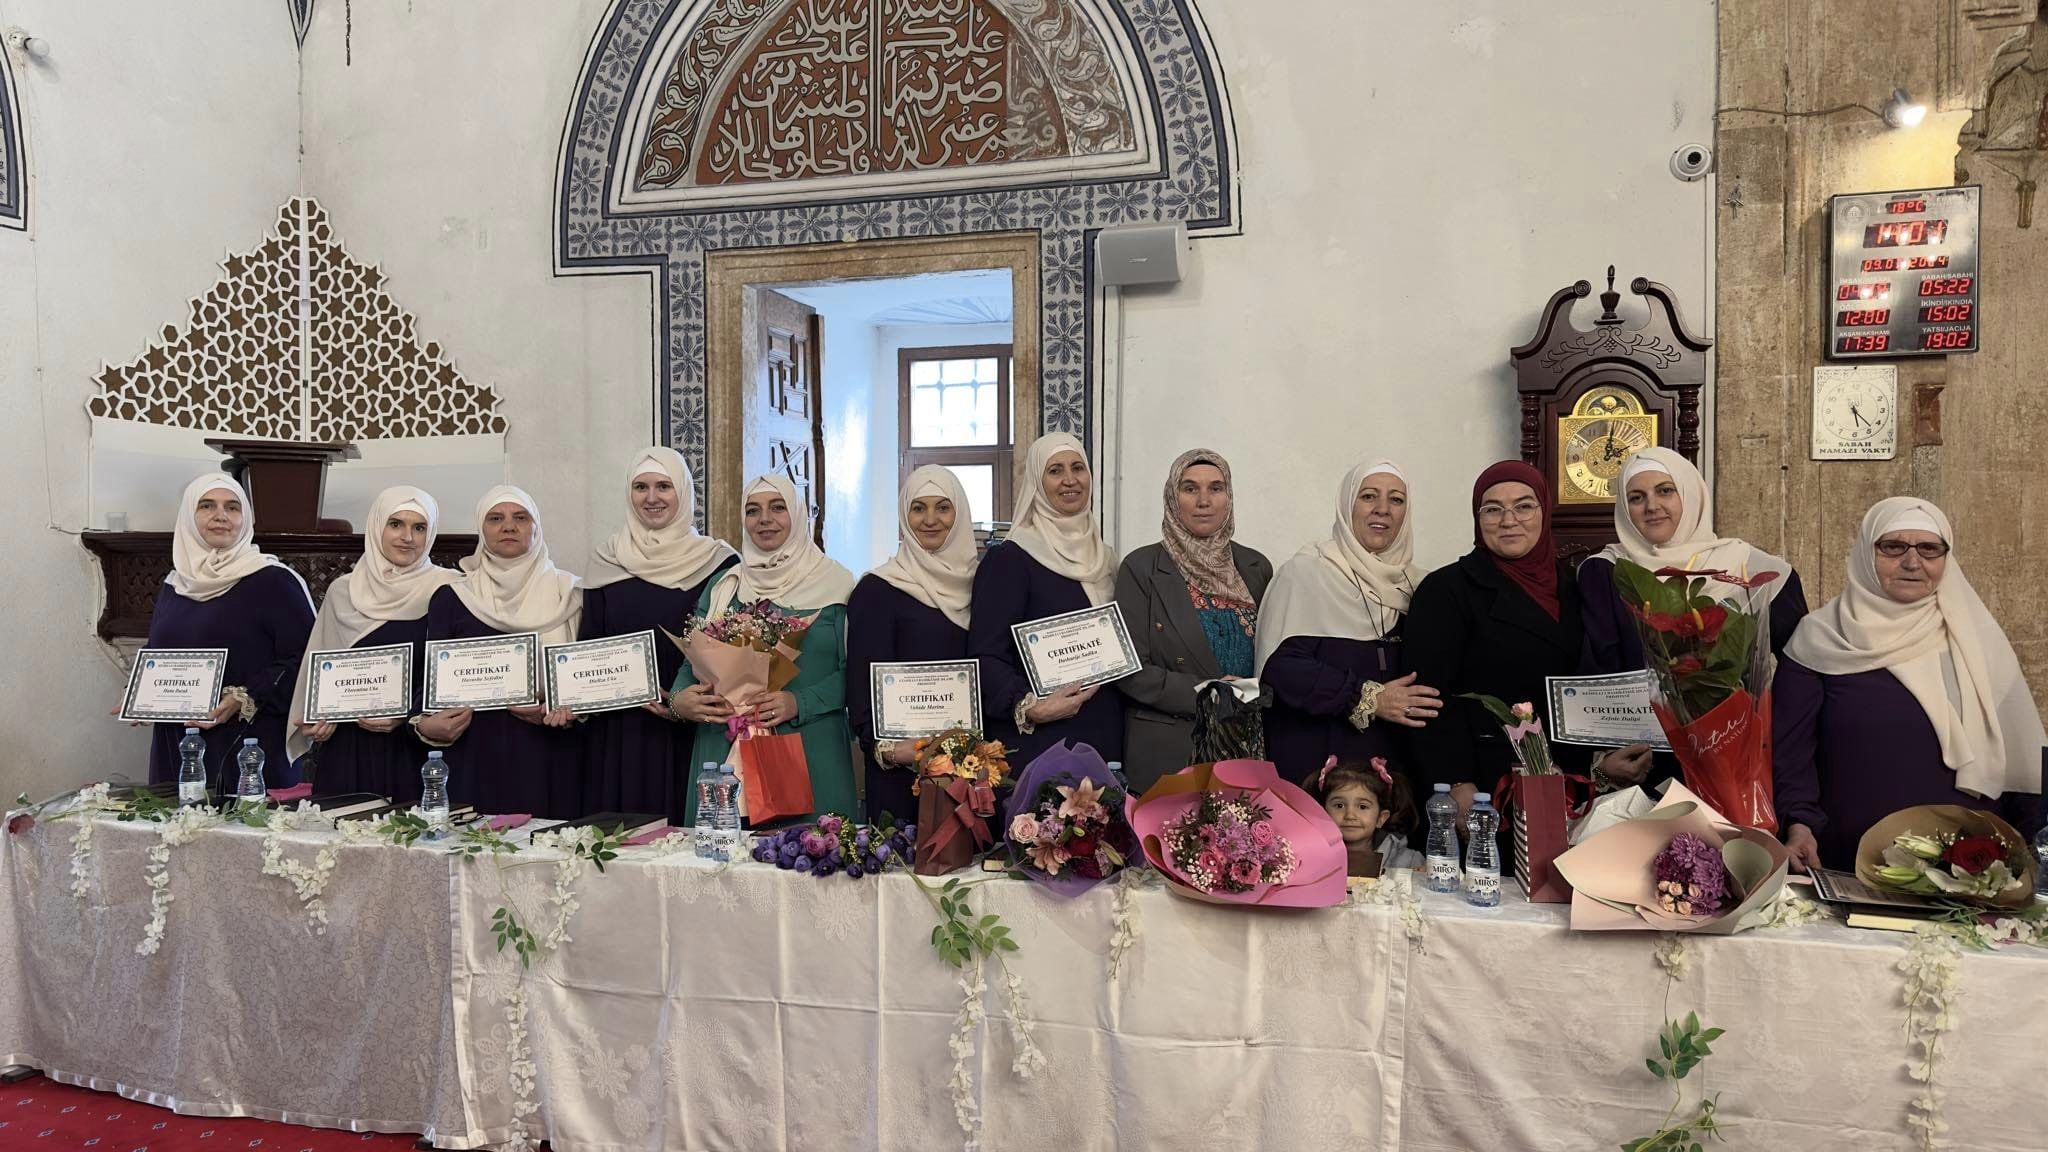 استقبلن أمهات كوسوفا شهر رمضان المبارك بإتمام برنامج تلاوة القرآن الكريم كاملًا على مدار الأشهر الماضية مع المعلمة قدرية دراجوشا.